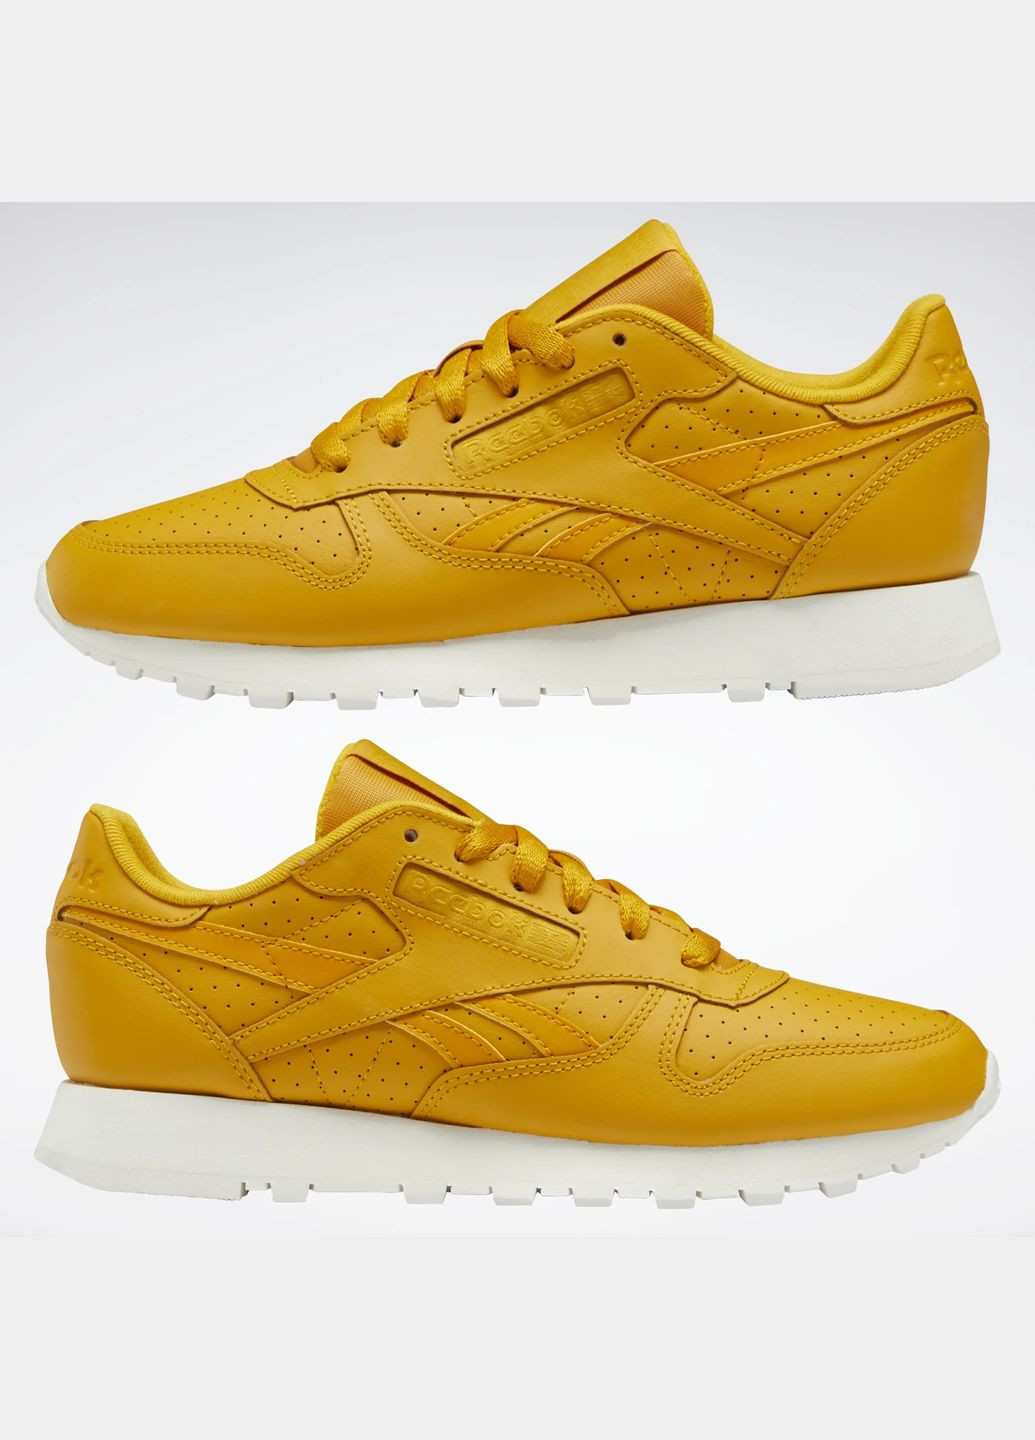 Светло-оранжевые демисезонные кроссовки Reebok Classic Leather Shoes Orange GY1579